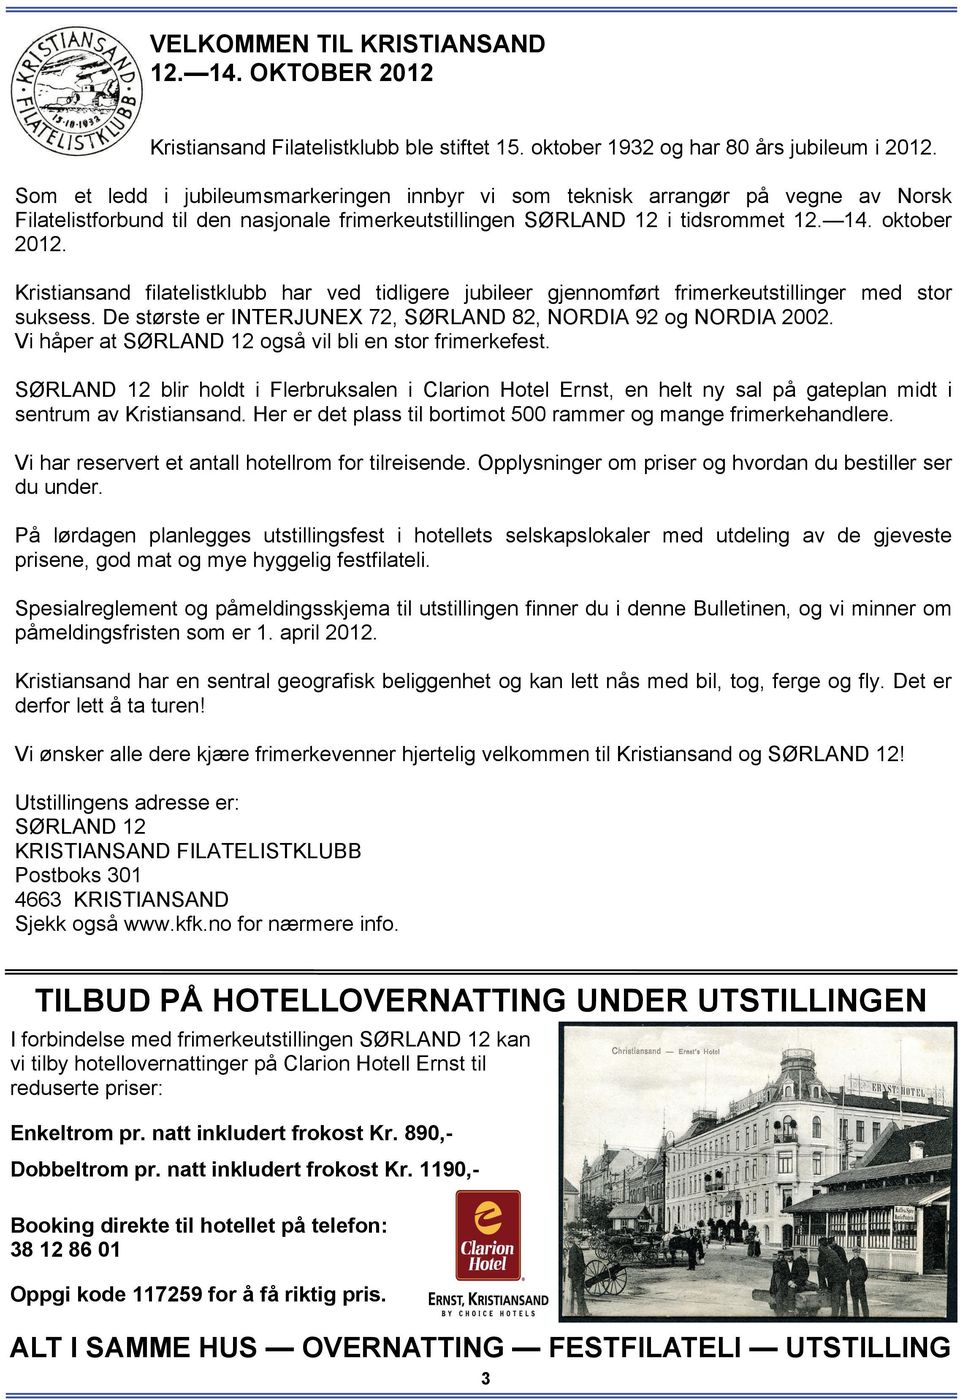 Kristiansand filatelistklubb har ved tidligere jubileer gjennomført frimerkeutstillinger med stor suksess. De største er INTERJUNEX 72, SØRLAND 82, NORDIA 92 og NORDIA 2002.